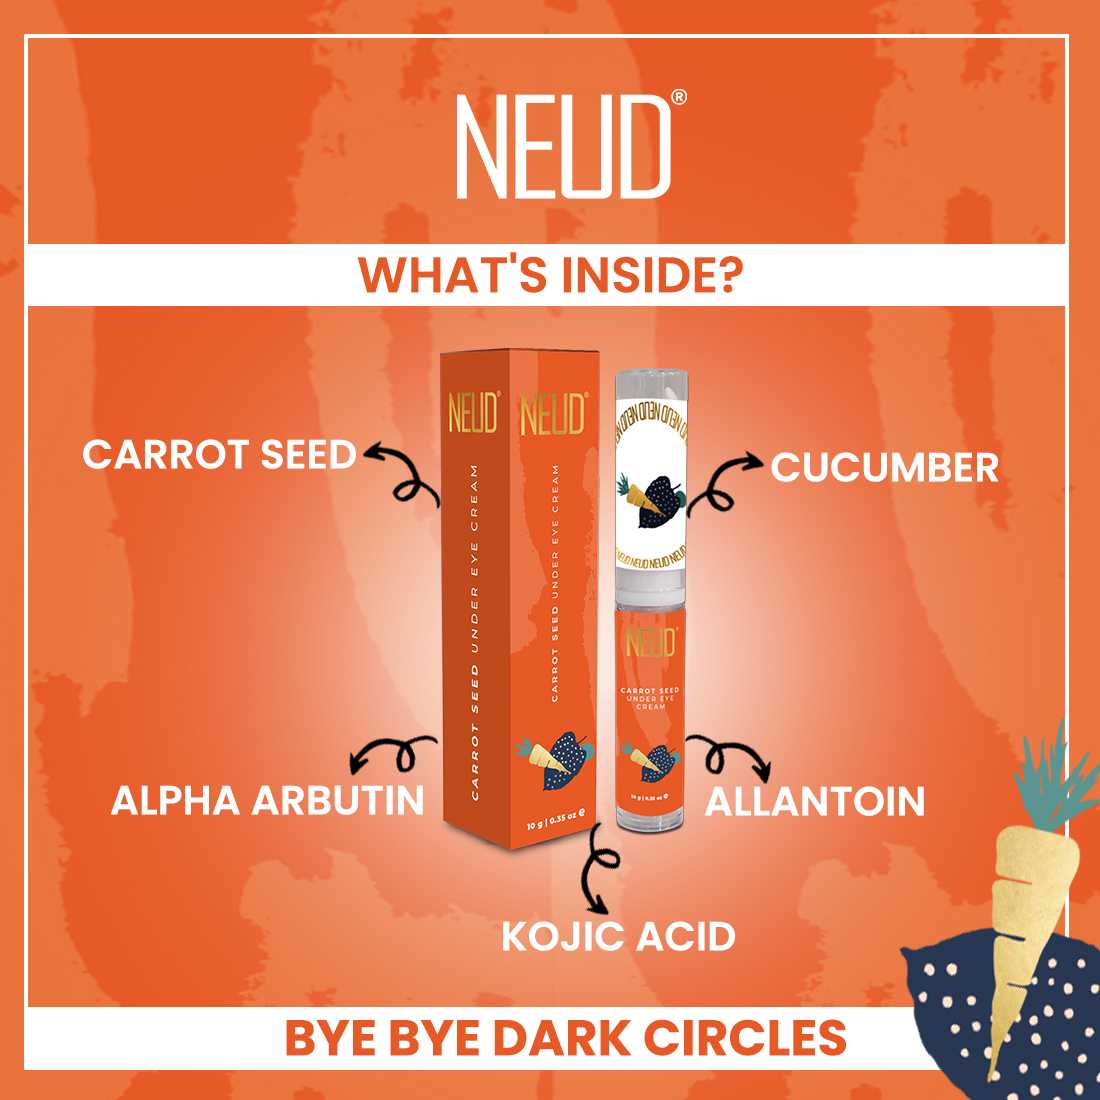 NEUD Carrot Seed Premium Under Eye Cream for Men & Women - 10g